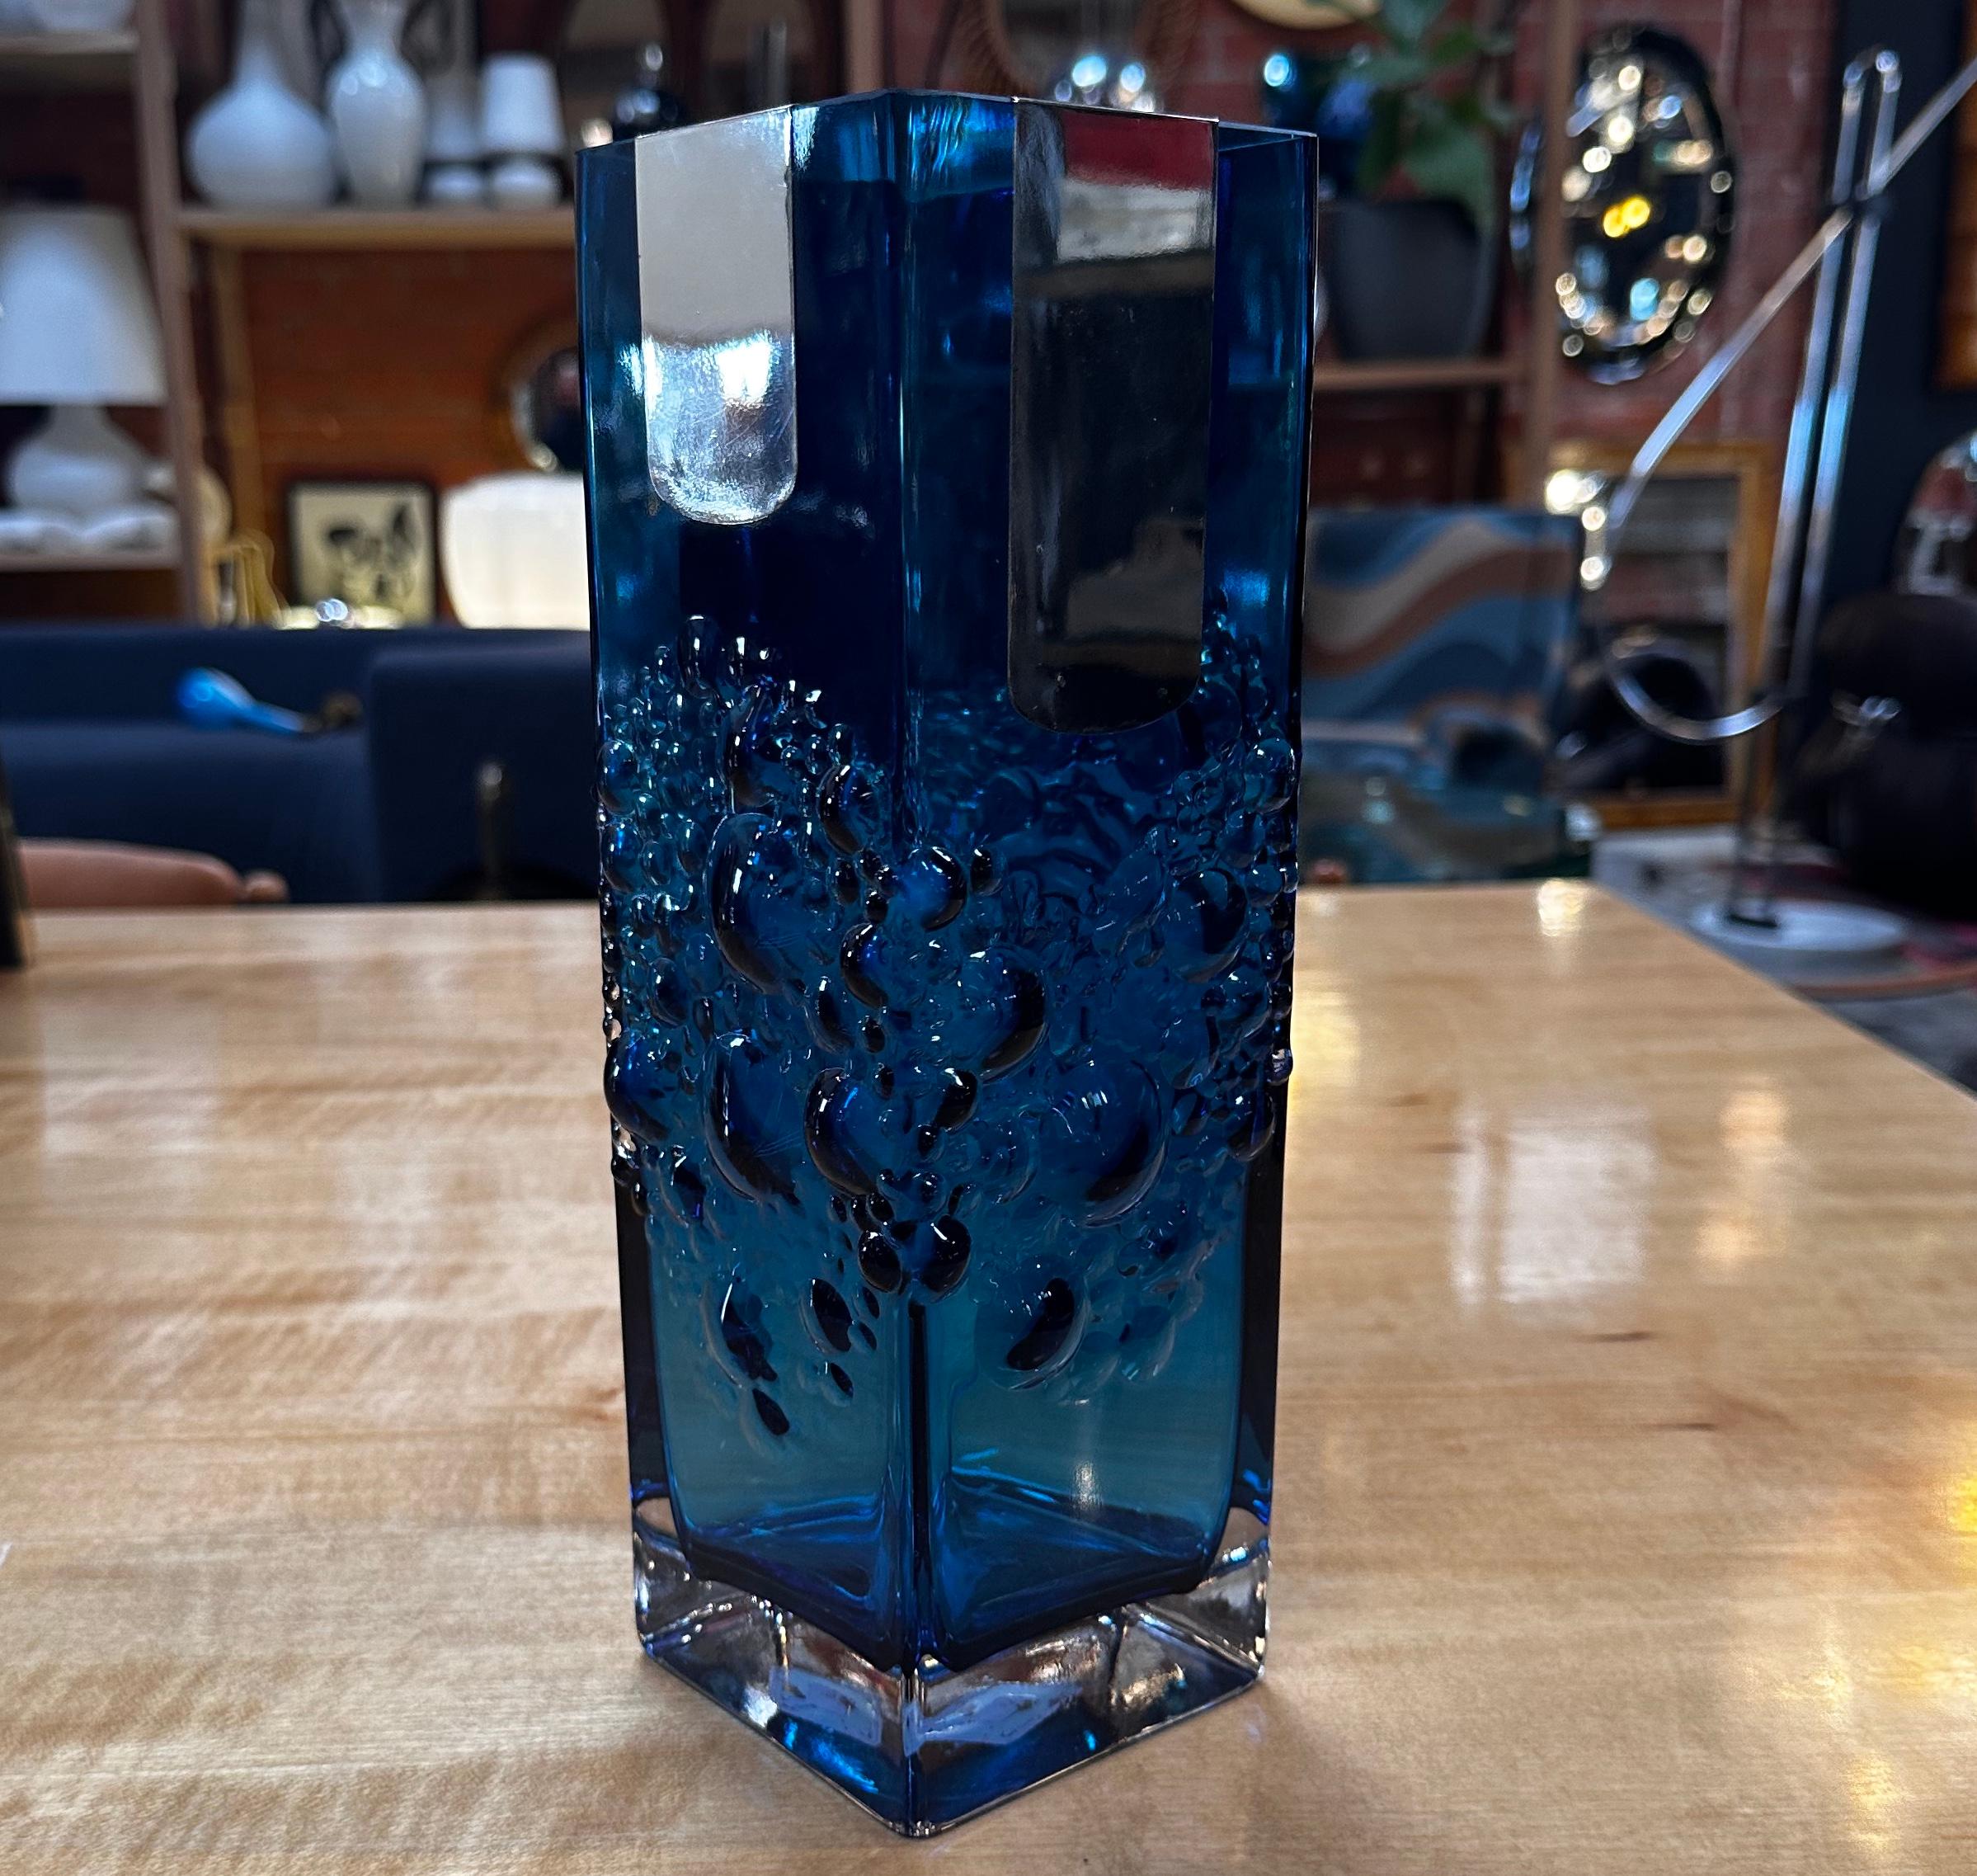 Die dekorative blaue Vintage-Vase aus den 1980er Jahren ist ein stilvolles Stück, das die Essenz des italienischen Designs dieser Zeit einfängt. Die Vase ist in einem auffälligen Blauton gehalten, der die lebendige und eklektische Ästhetik der